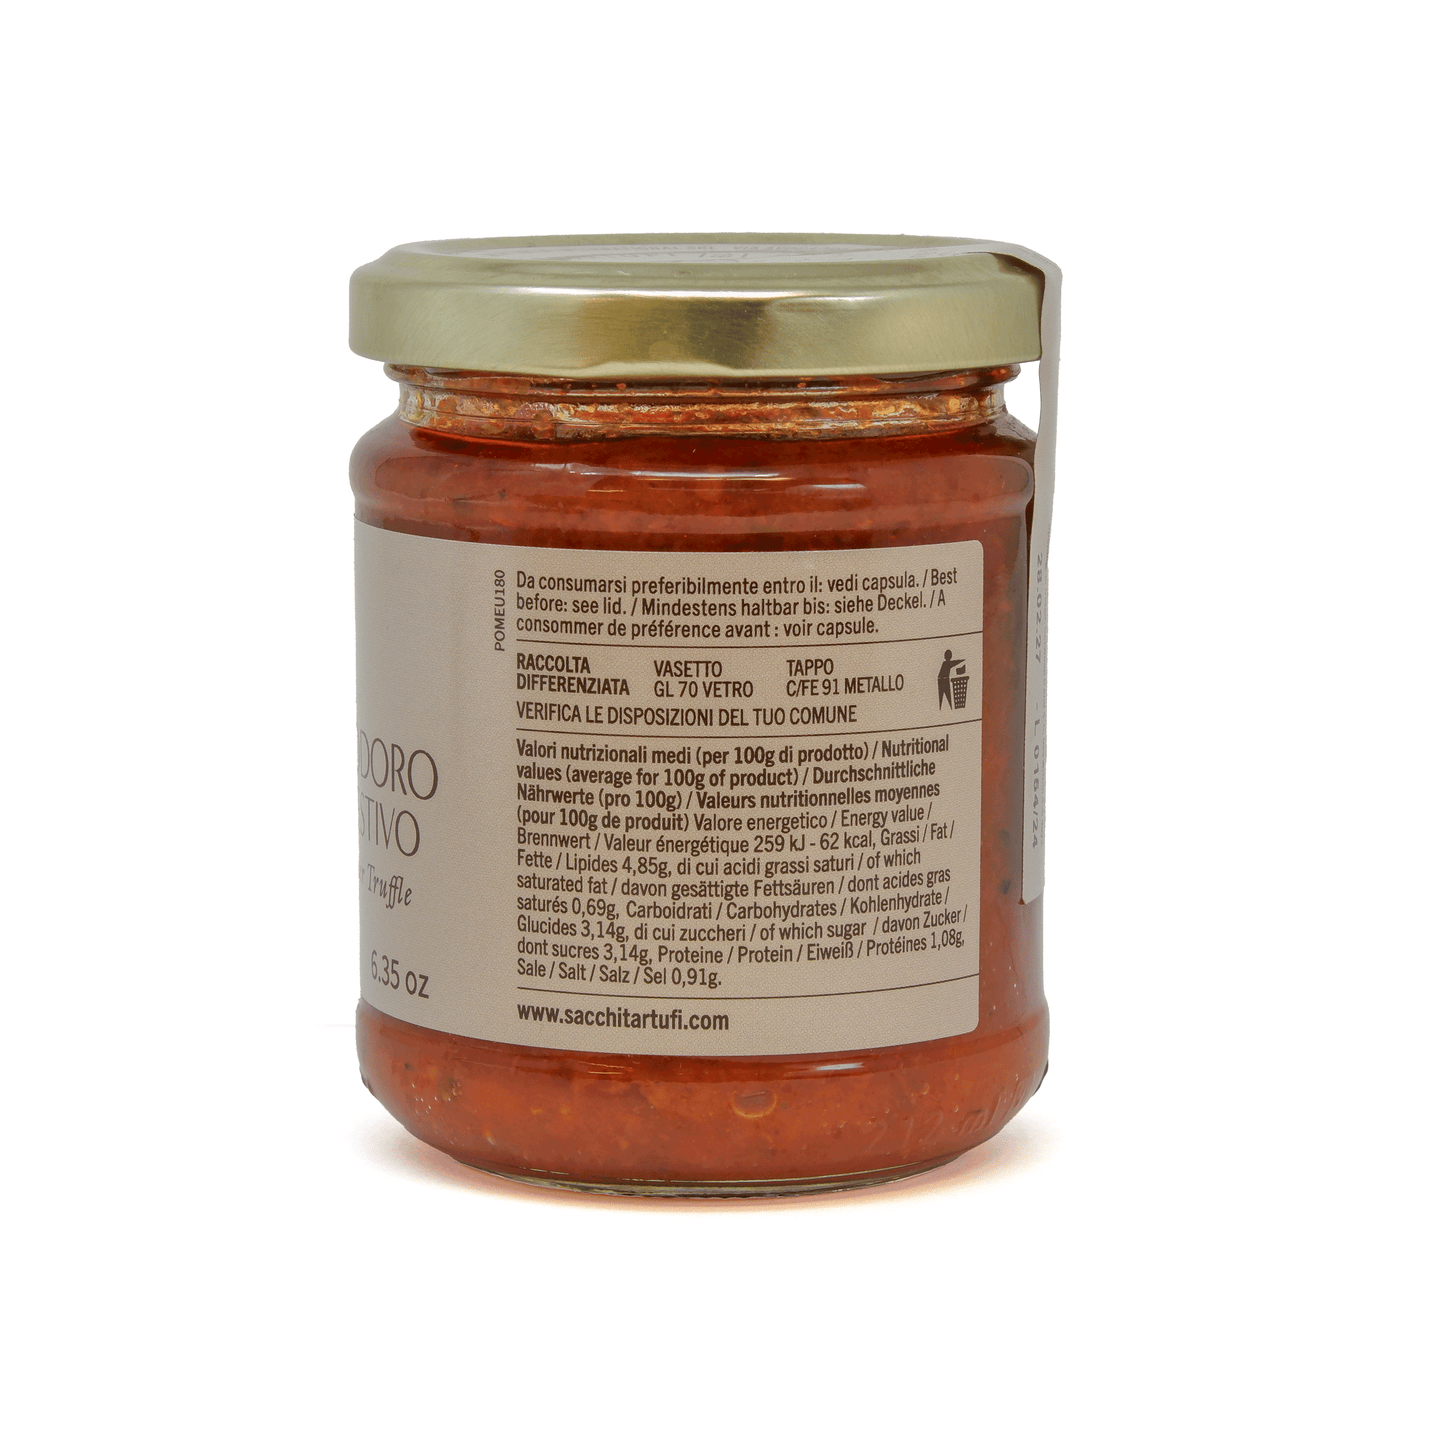 Italian Pomodoro Truffle Sauce